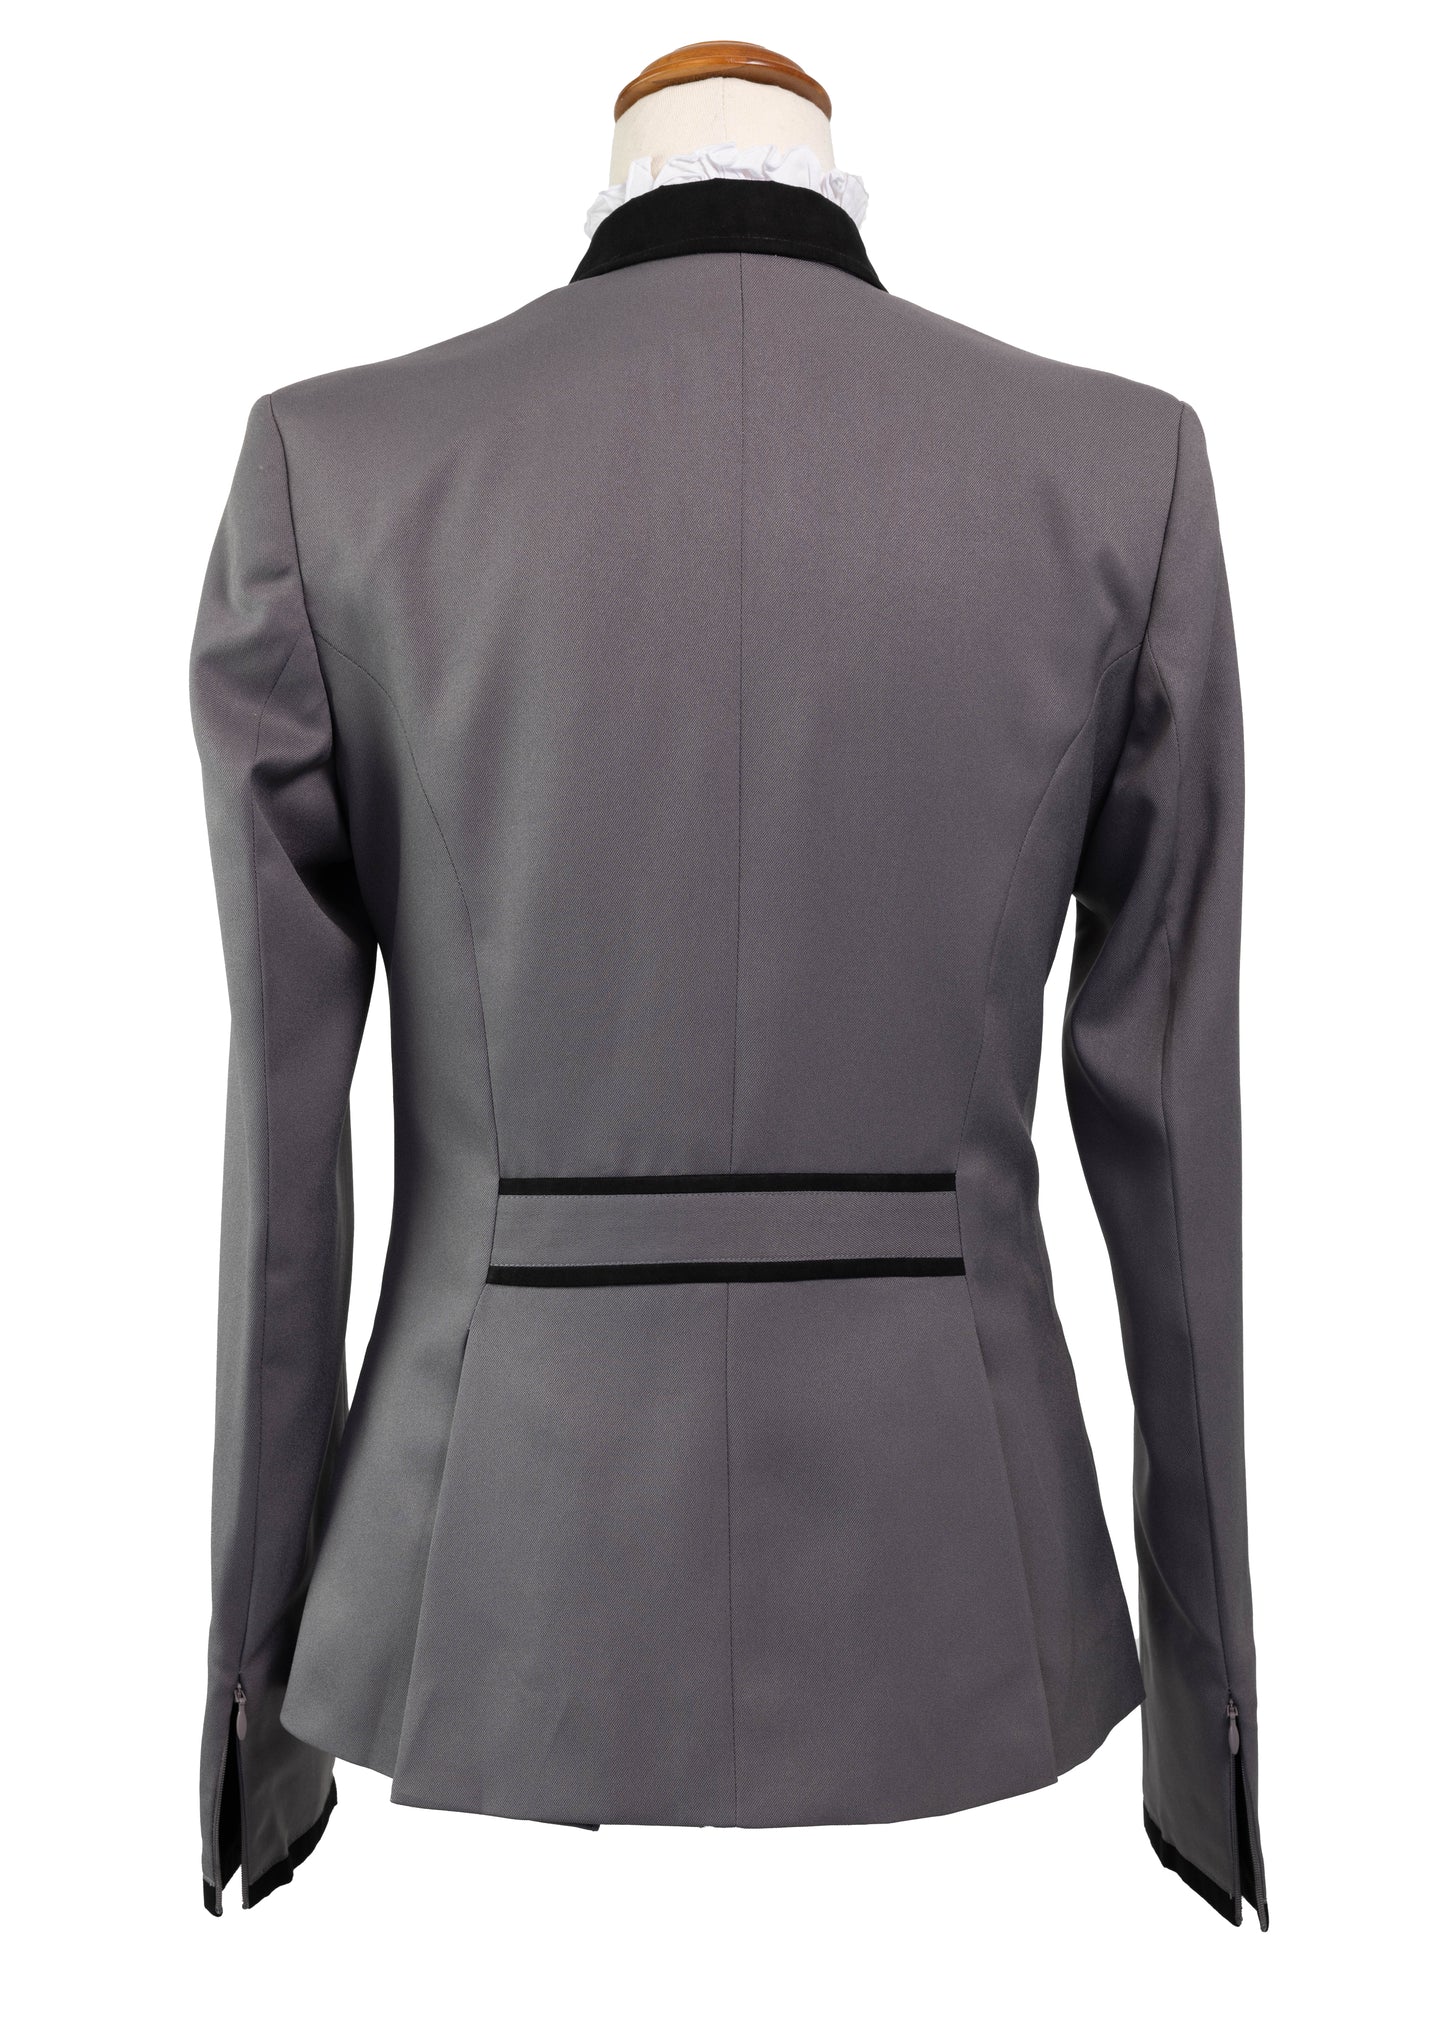 New Style Gunmetal Grey Stretch Jacket with Black Detail